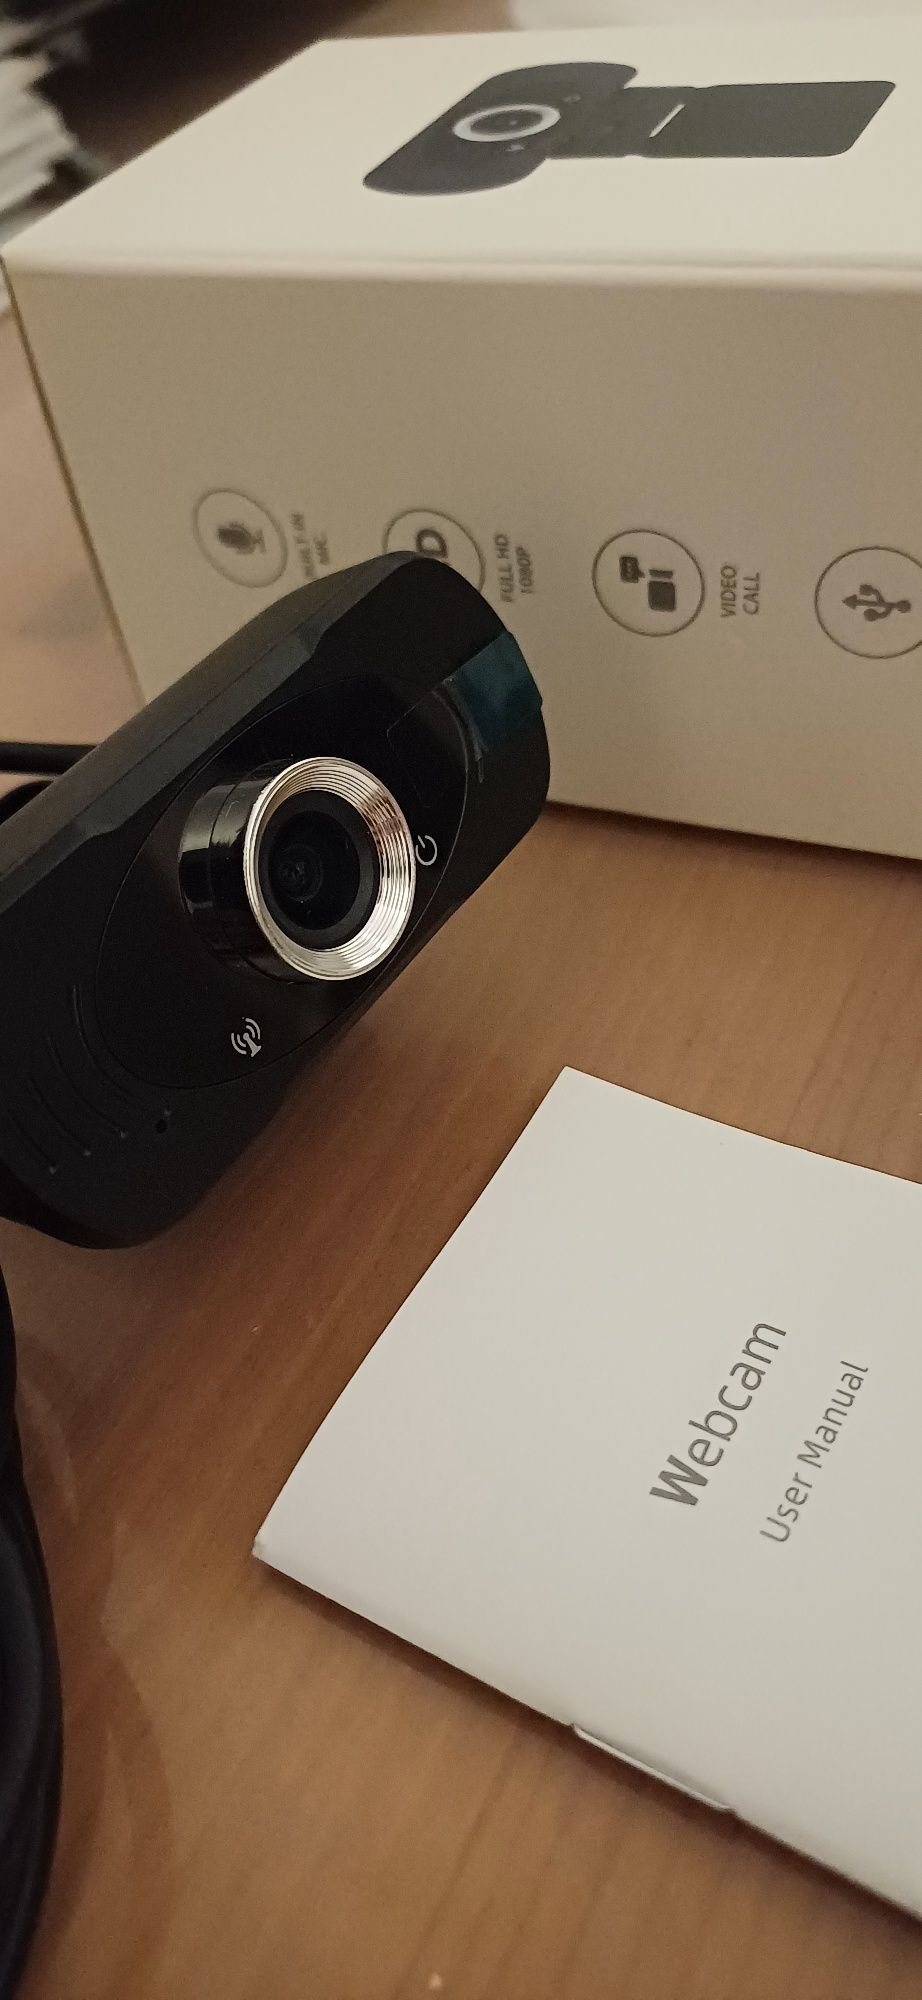 Webcam CMSXJ22A kamerka internetowa Full HD Ideał